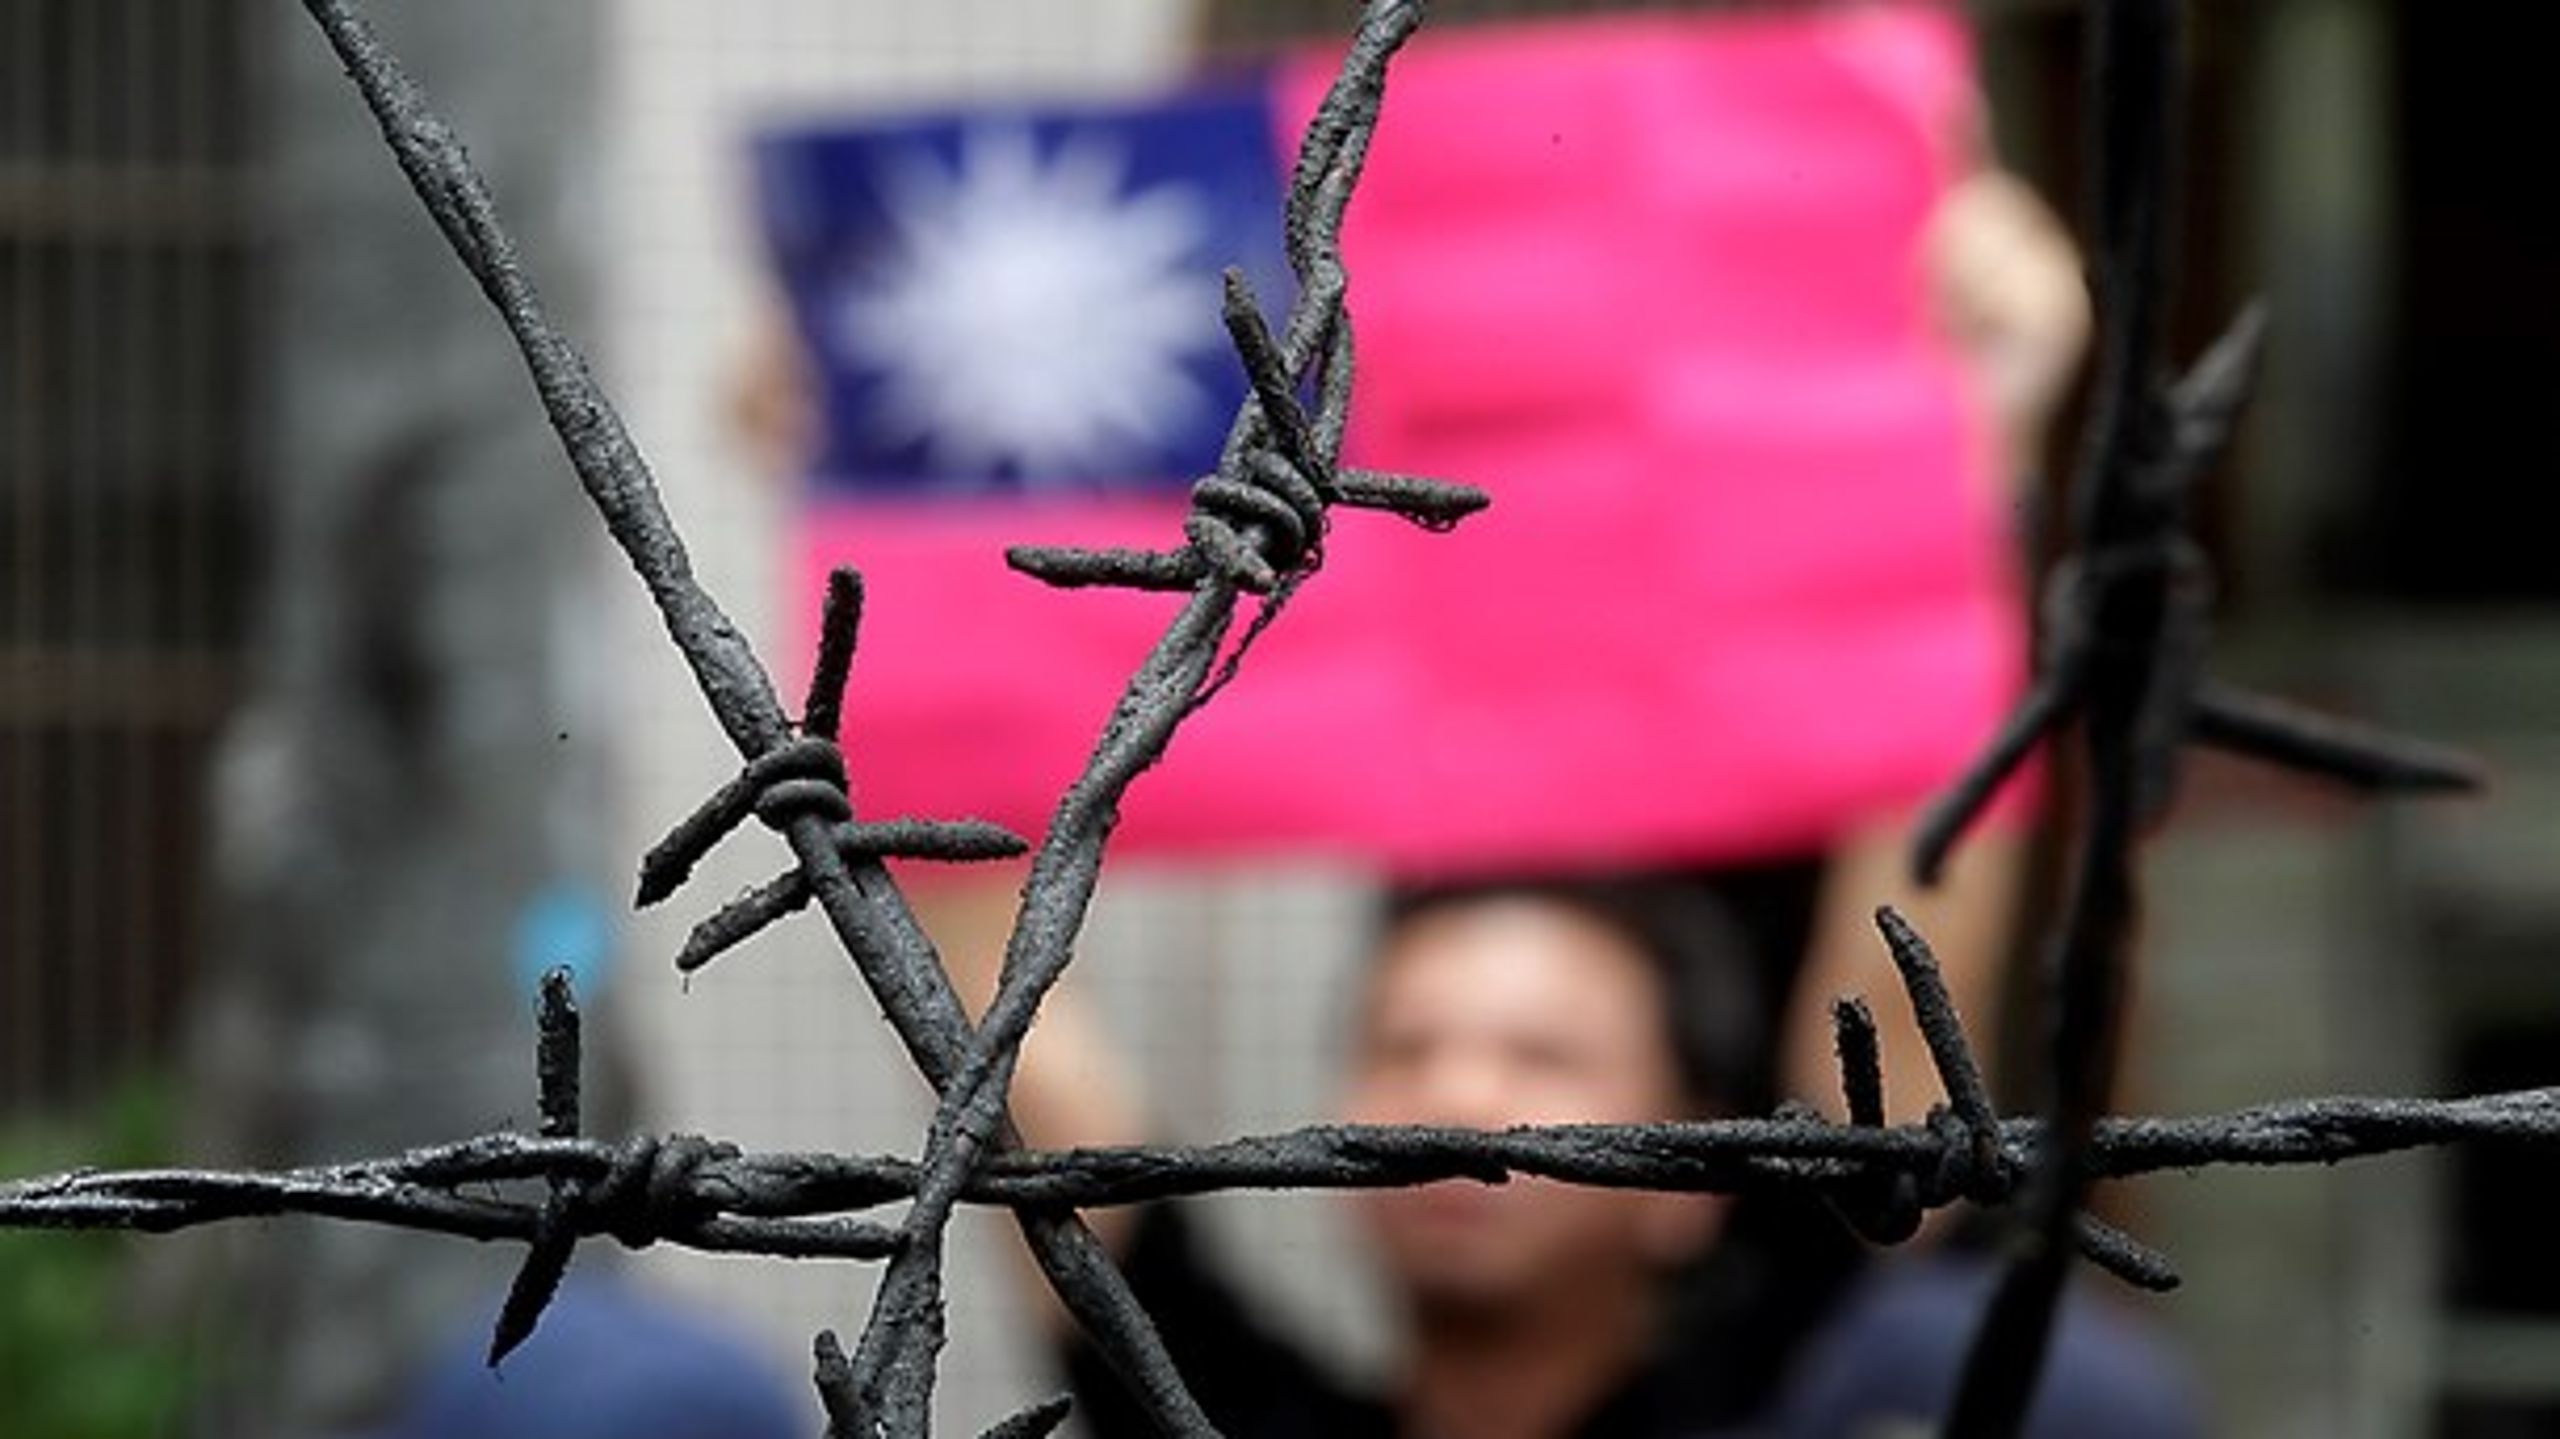 <span>Taiwan
konfronterer os med et vanskeligt spørgsmål om at forsvare liberale
værdier på den anden side af kloden, mener Sten Rynning.</span>